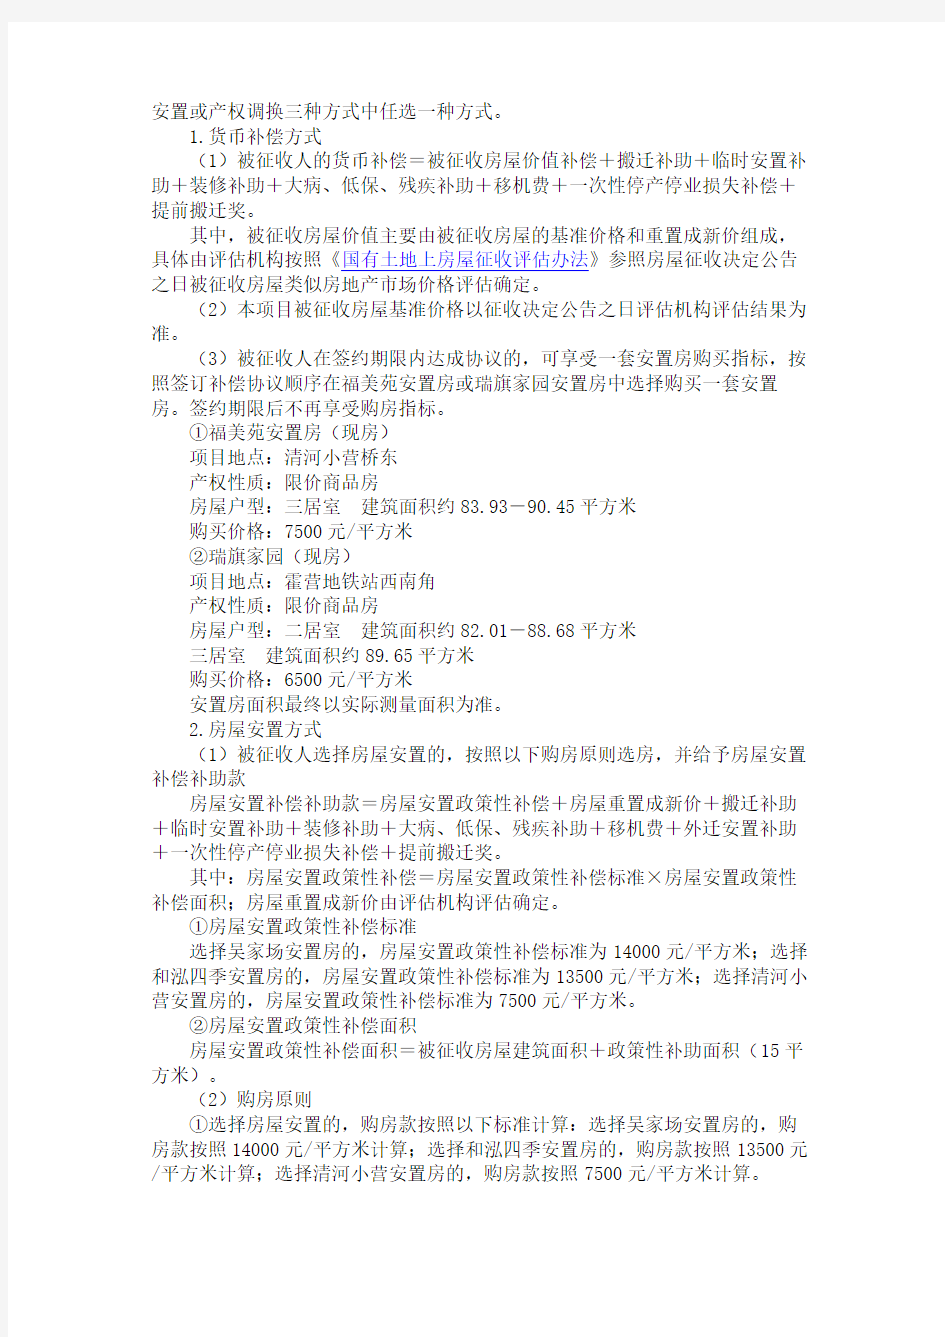 北京市海淀区人民政府关于国有土地上房屋征收决定2013